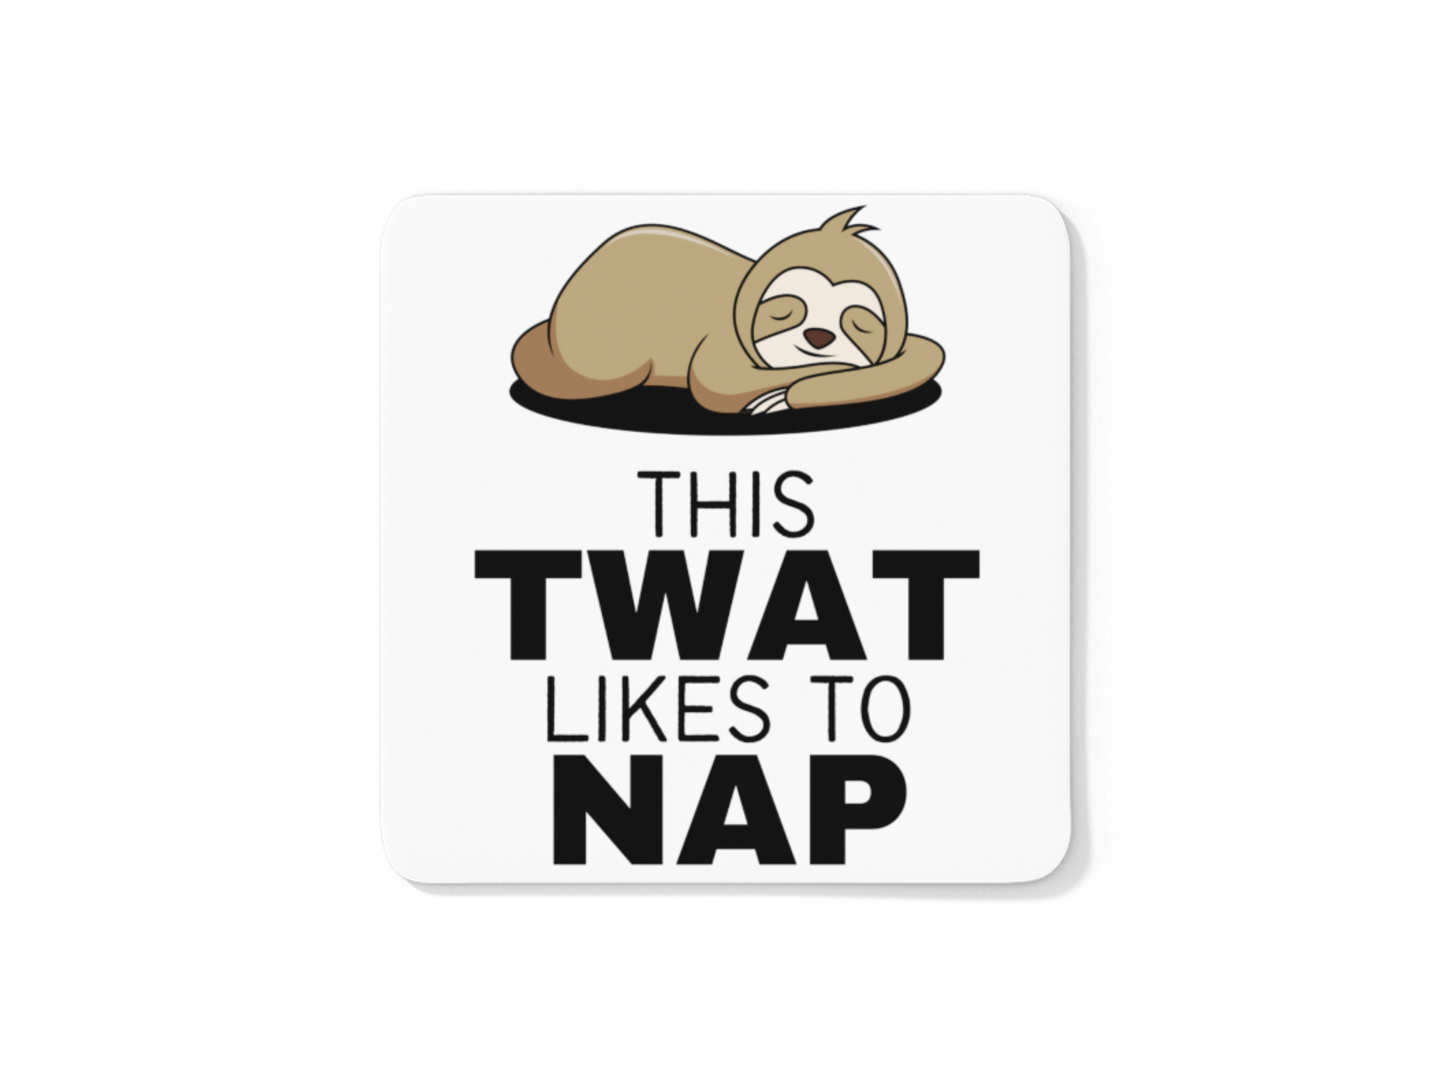 This twat likes to nap sloth theme coffee mug